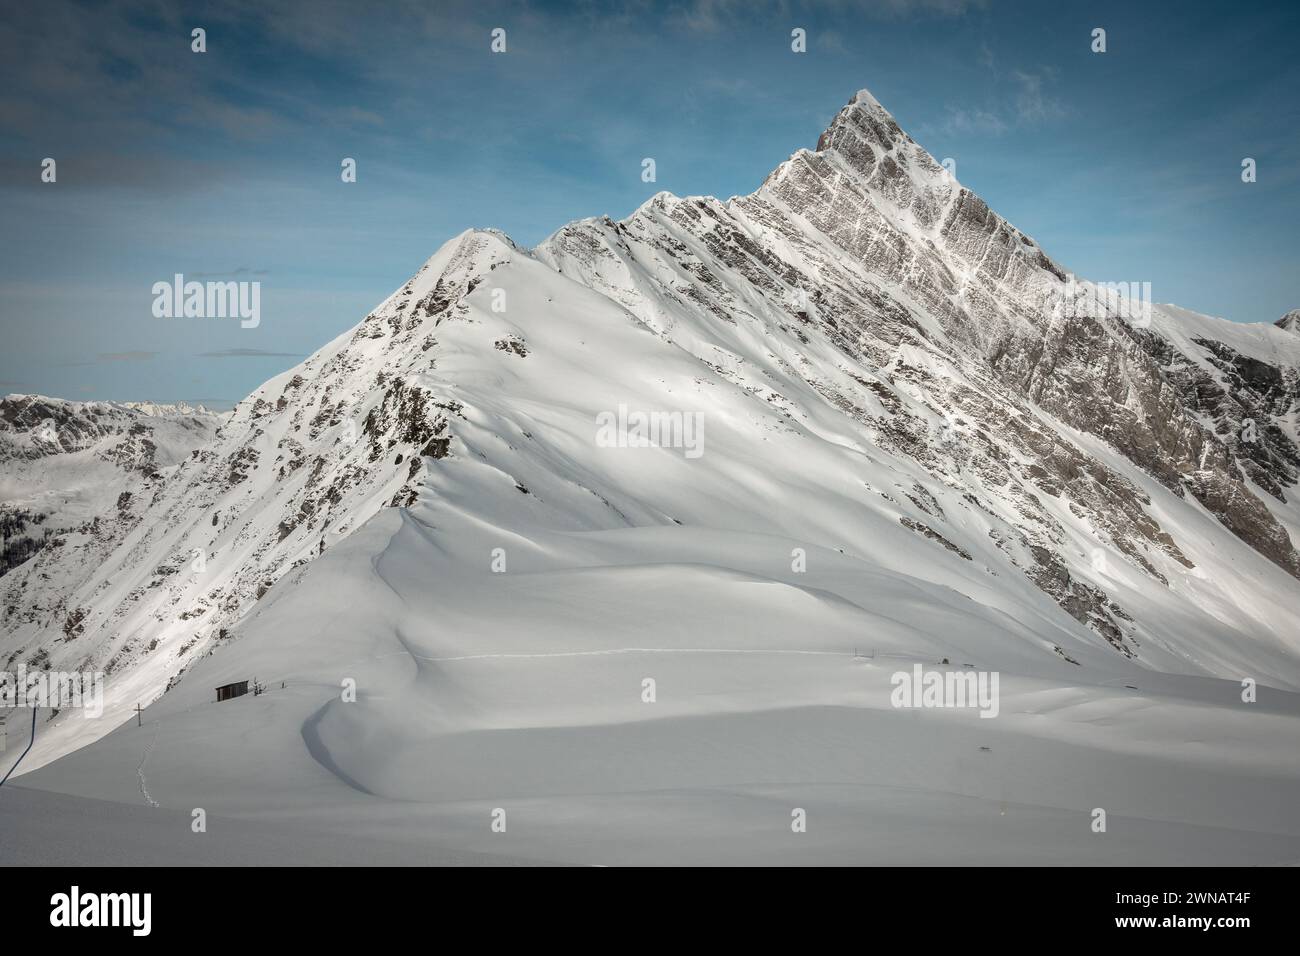 Piste de ski et le sommet d'une grande montagne couverte de neige, Hintertux, Autriche Banque D'Images